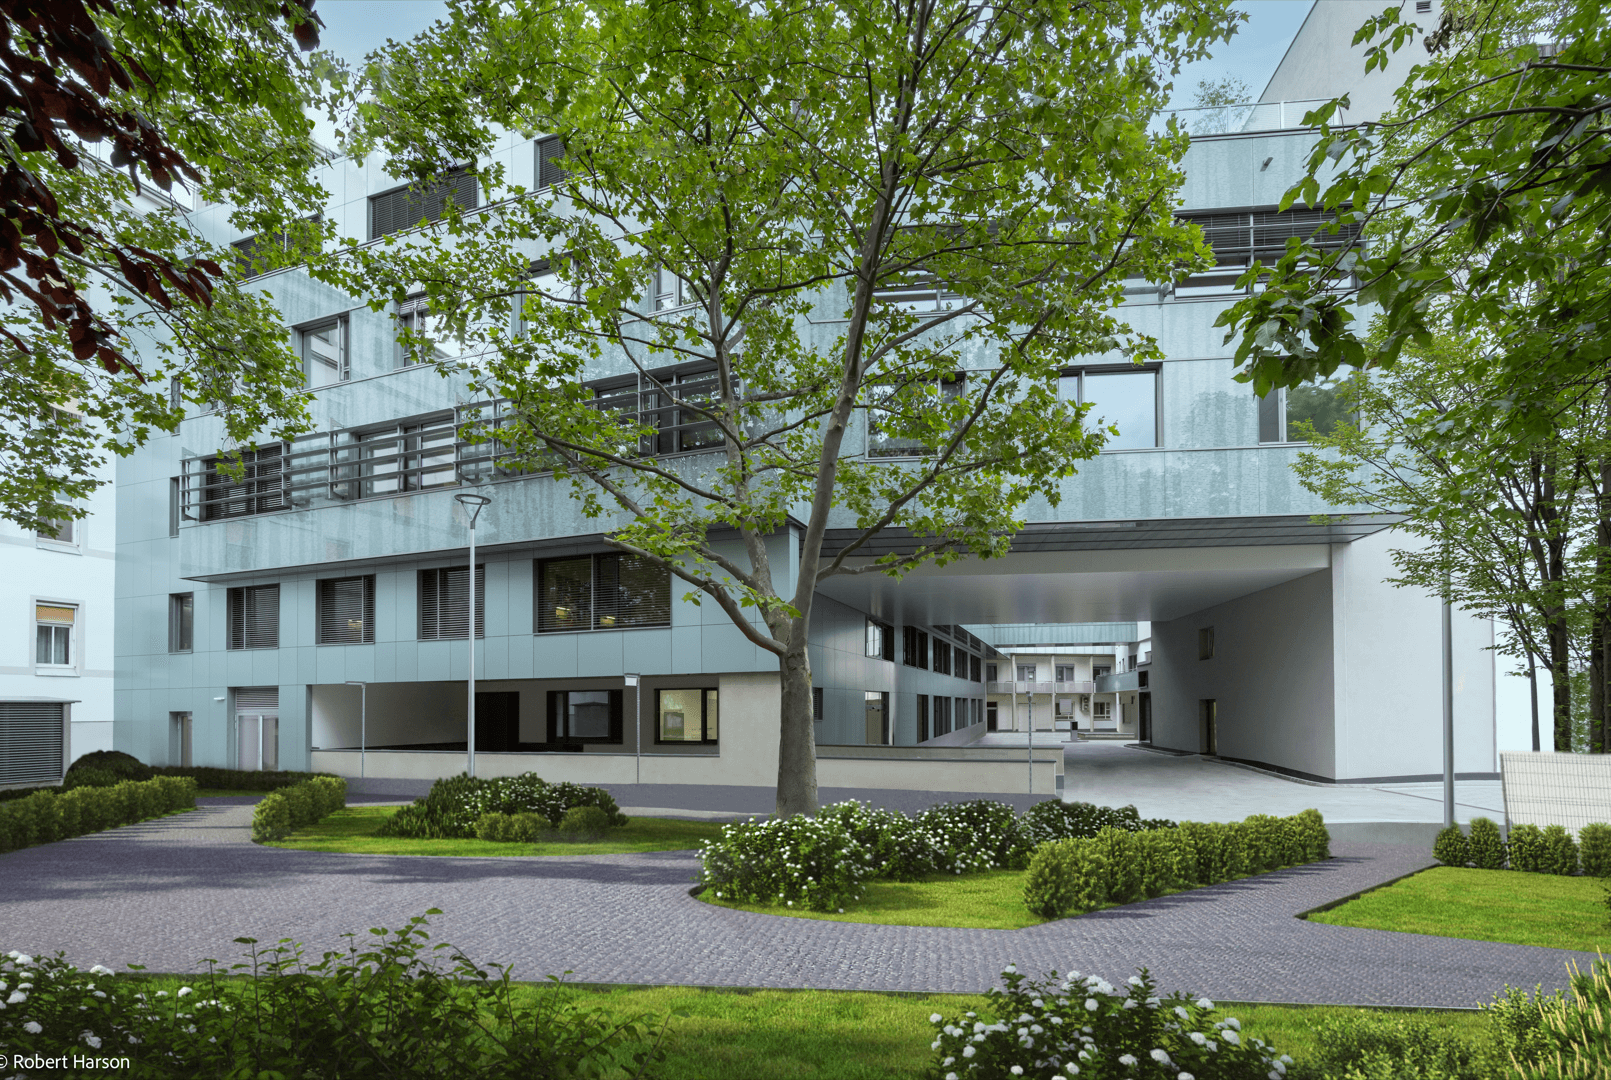 Jobs bei Herz Jesu Krankenhaus GmbH